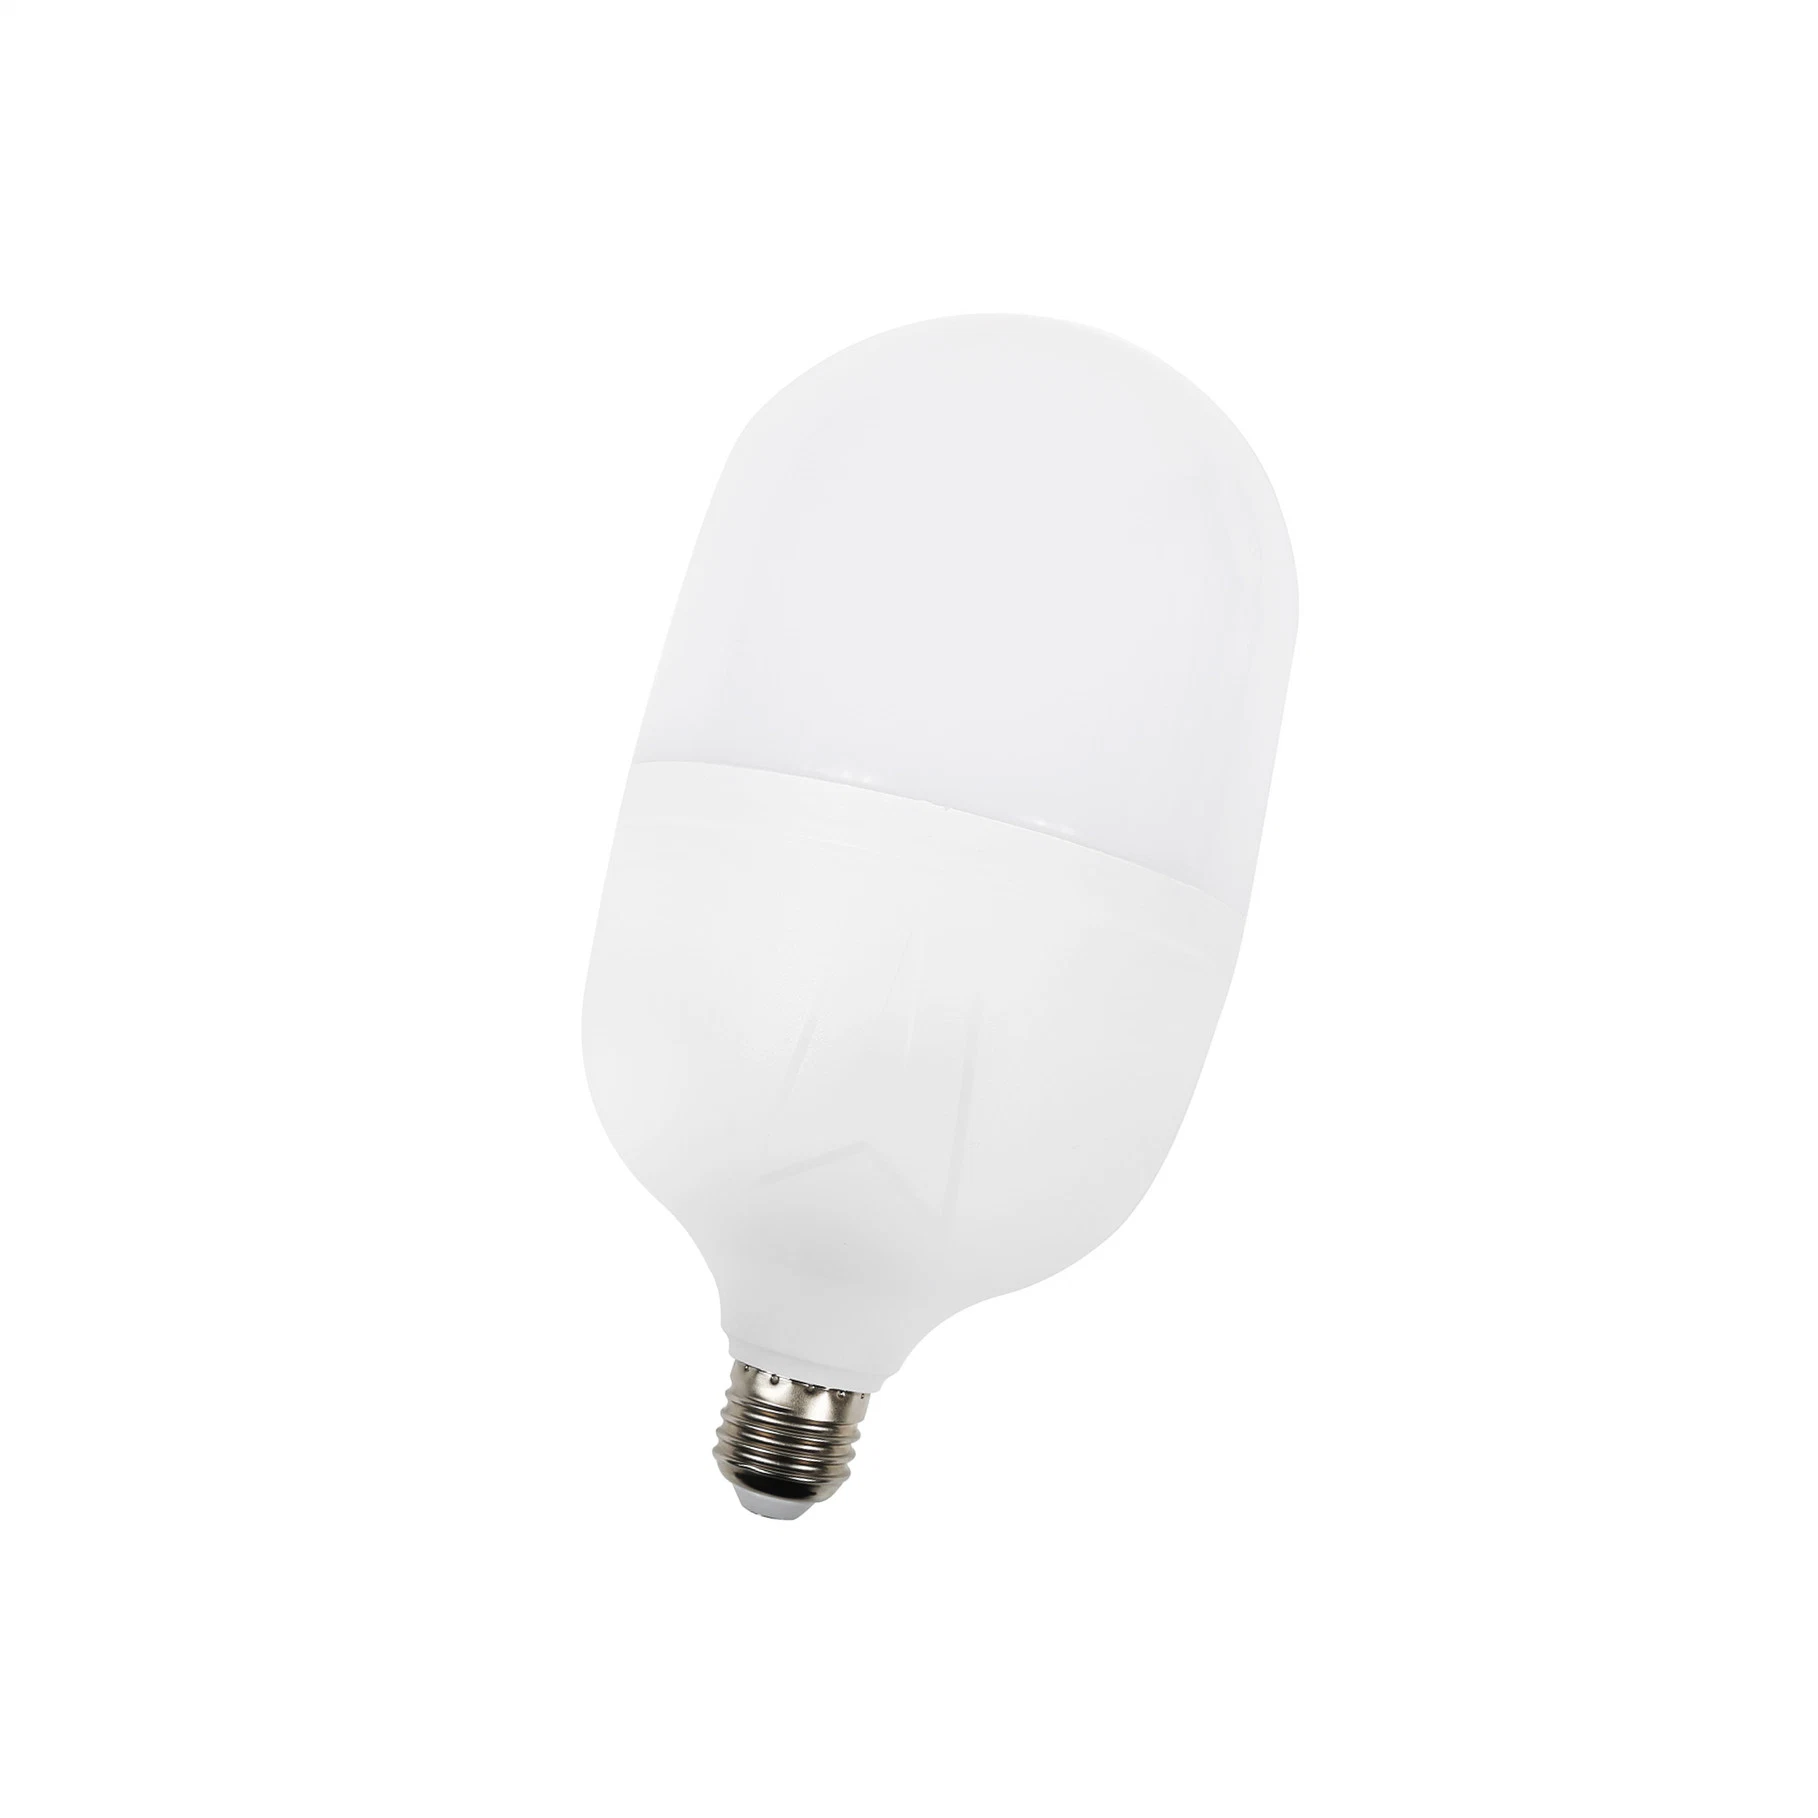 LED Luz LED de alta calidad T bombilla 20W 30W 40W Iluminación decorativa interior lámpara de bajo consumo corriente constante